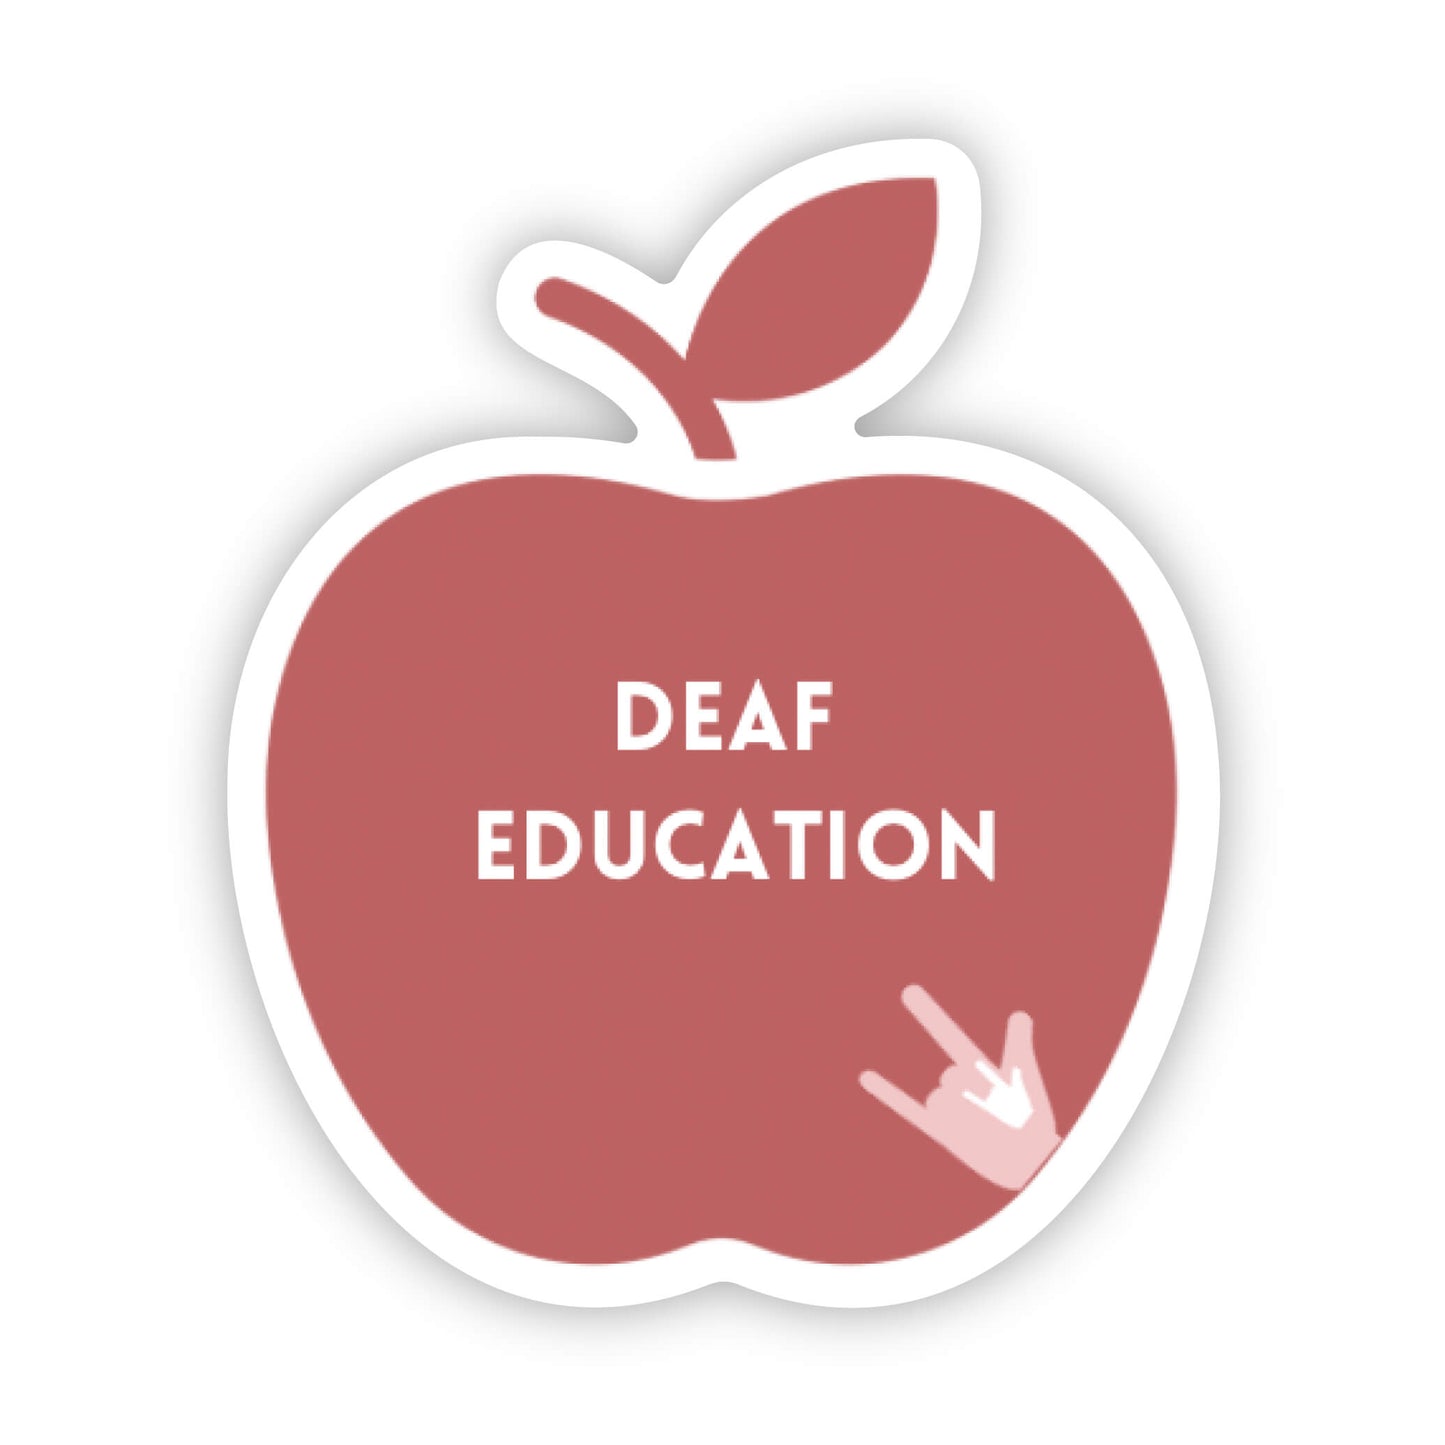 Deaf Education Apple Sticker